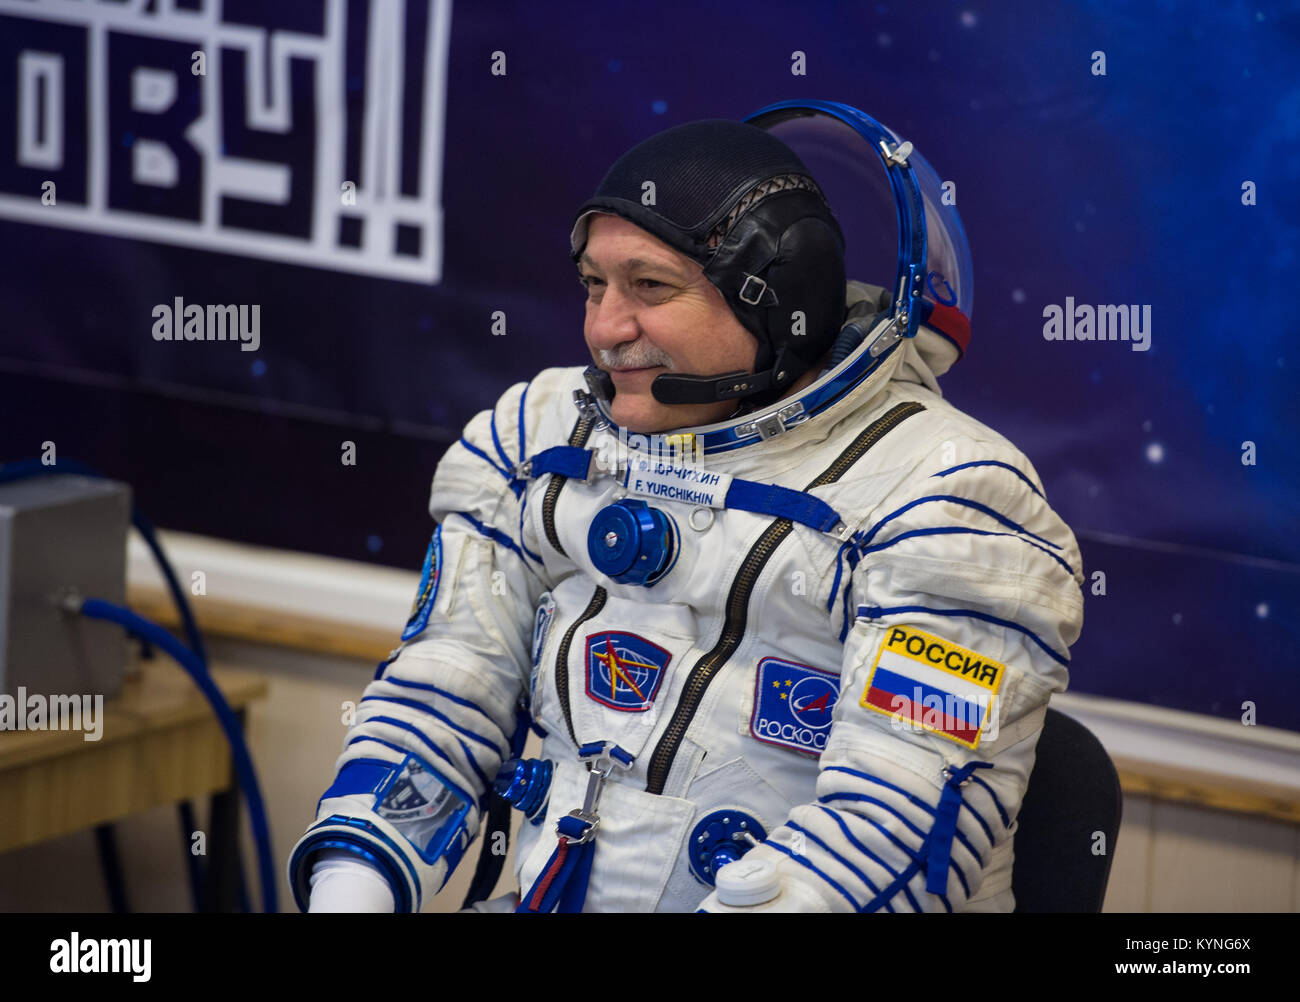 Expedition 51 commandant de Soyouz Fyodor Yurchikhin de Roscosmos sourit à ses amis et sa famille après avoir son costume russe Sokol vérifié la pression en vue du lancement à bord du vaisseau Soyouz MS-04 le Jeudi, Avril 20, 2017 au cosmodrome de Baïkonour au Kazakhstan. Lancement de la fusée Soyouz est prévue pour 1:13pm 20 avril Baïkonour le temps et Yurchikhin et son coéquipier Jack Fischer ingénieur de vol de la NASA en orbite pour commencer leurs quatre mois et demi de mission sur la Station spatiale internationale. Crédit photo : NASA/Aubrey Gemignani) Banque D'Images